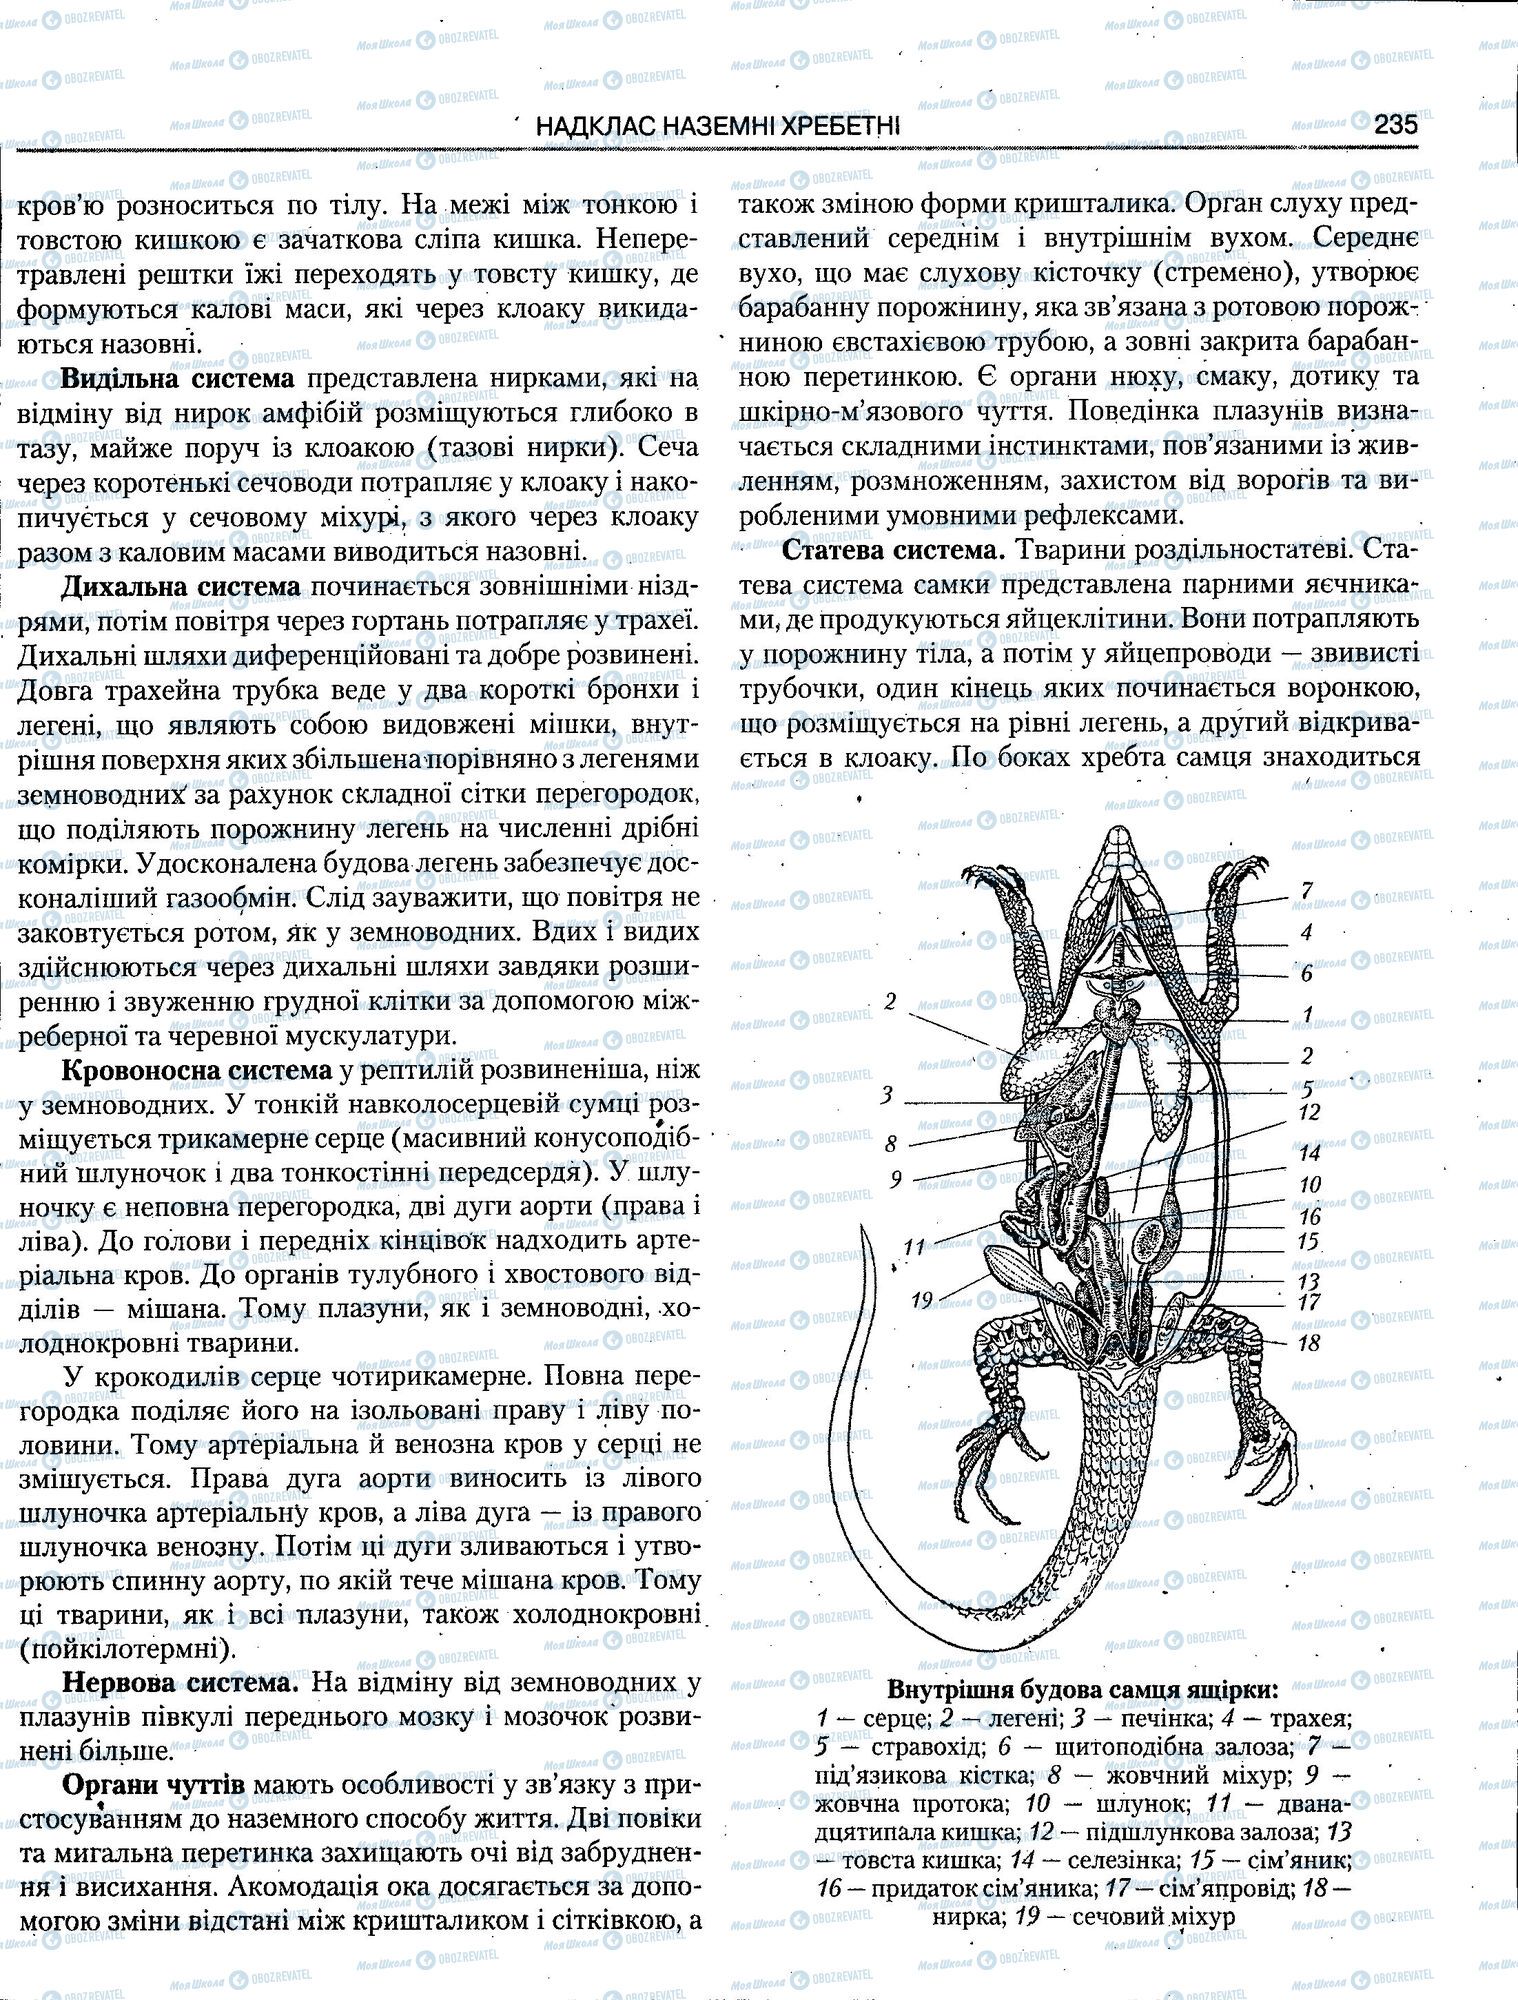 ЗНО Биология 11 класс страница 235